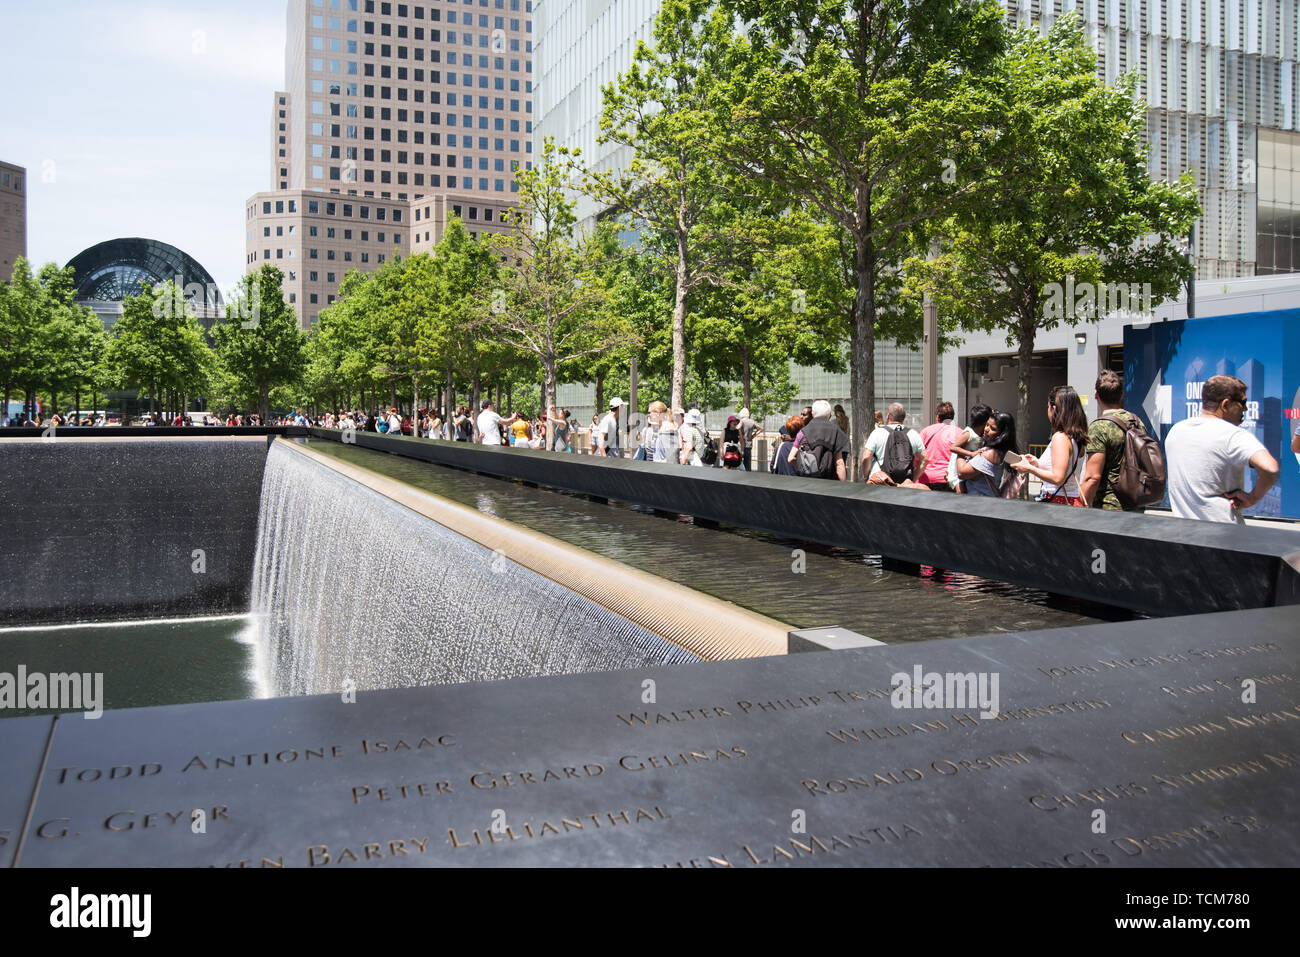 911 Memorial in New York Stock Photo